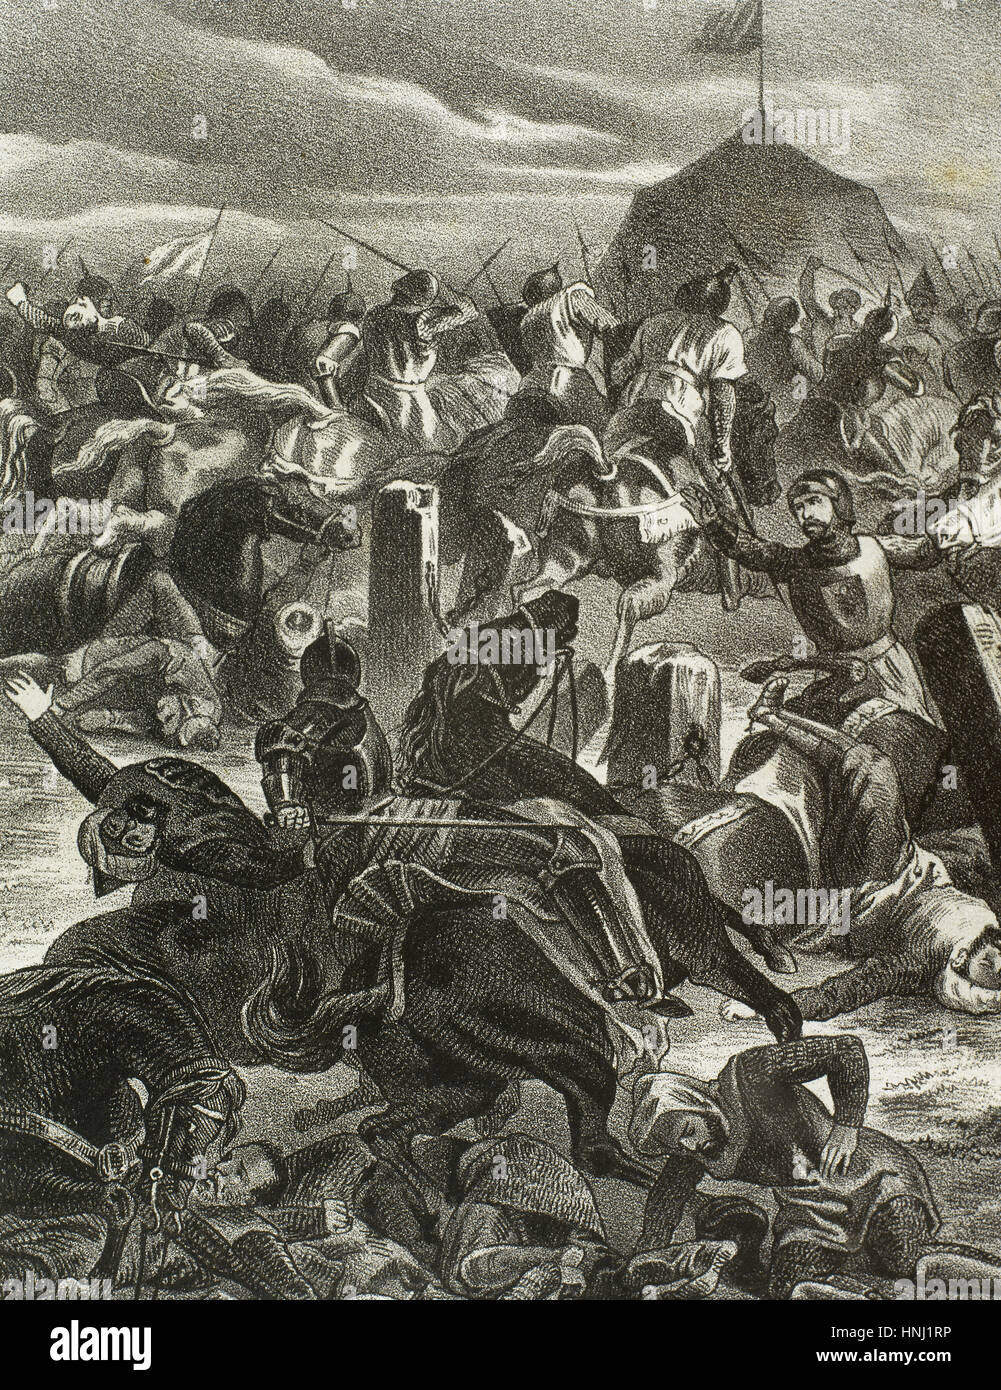 Spanien. Schlacht von Las Navas de Tolosa (1212), Alfonso VIII von Kastilien die Almohaden Armee des Kalifen al-Nasir Muhammad besiegt. Gravur. Stockfoto